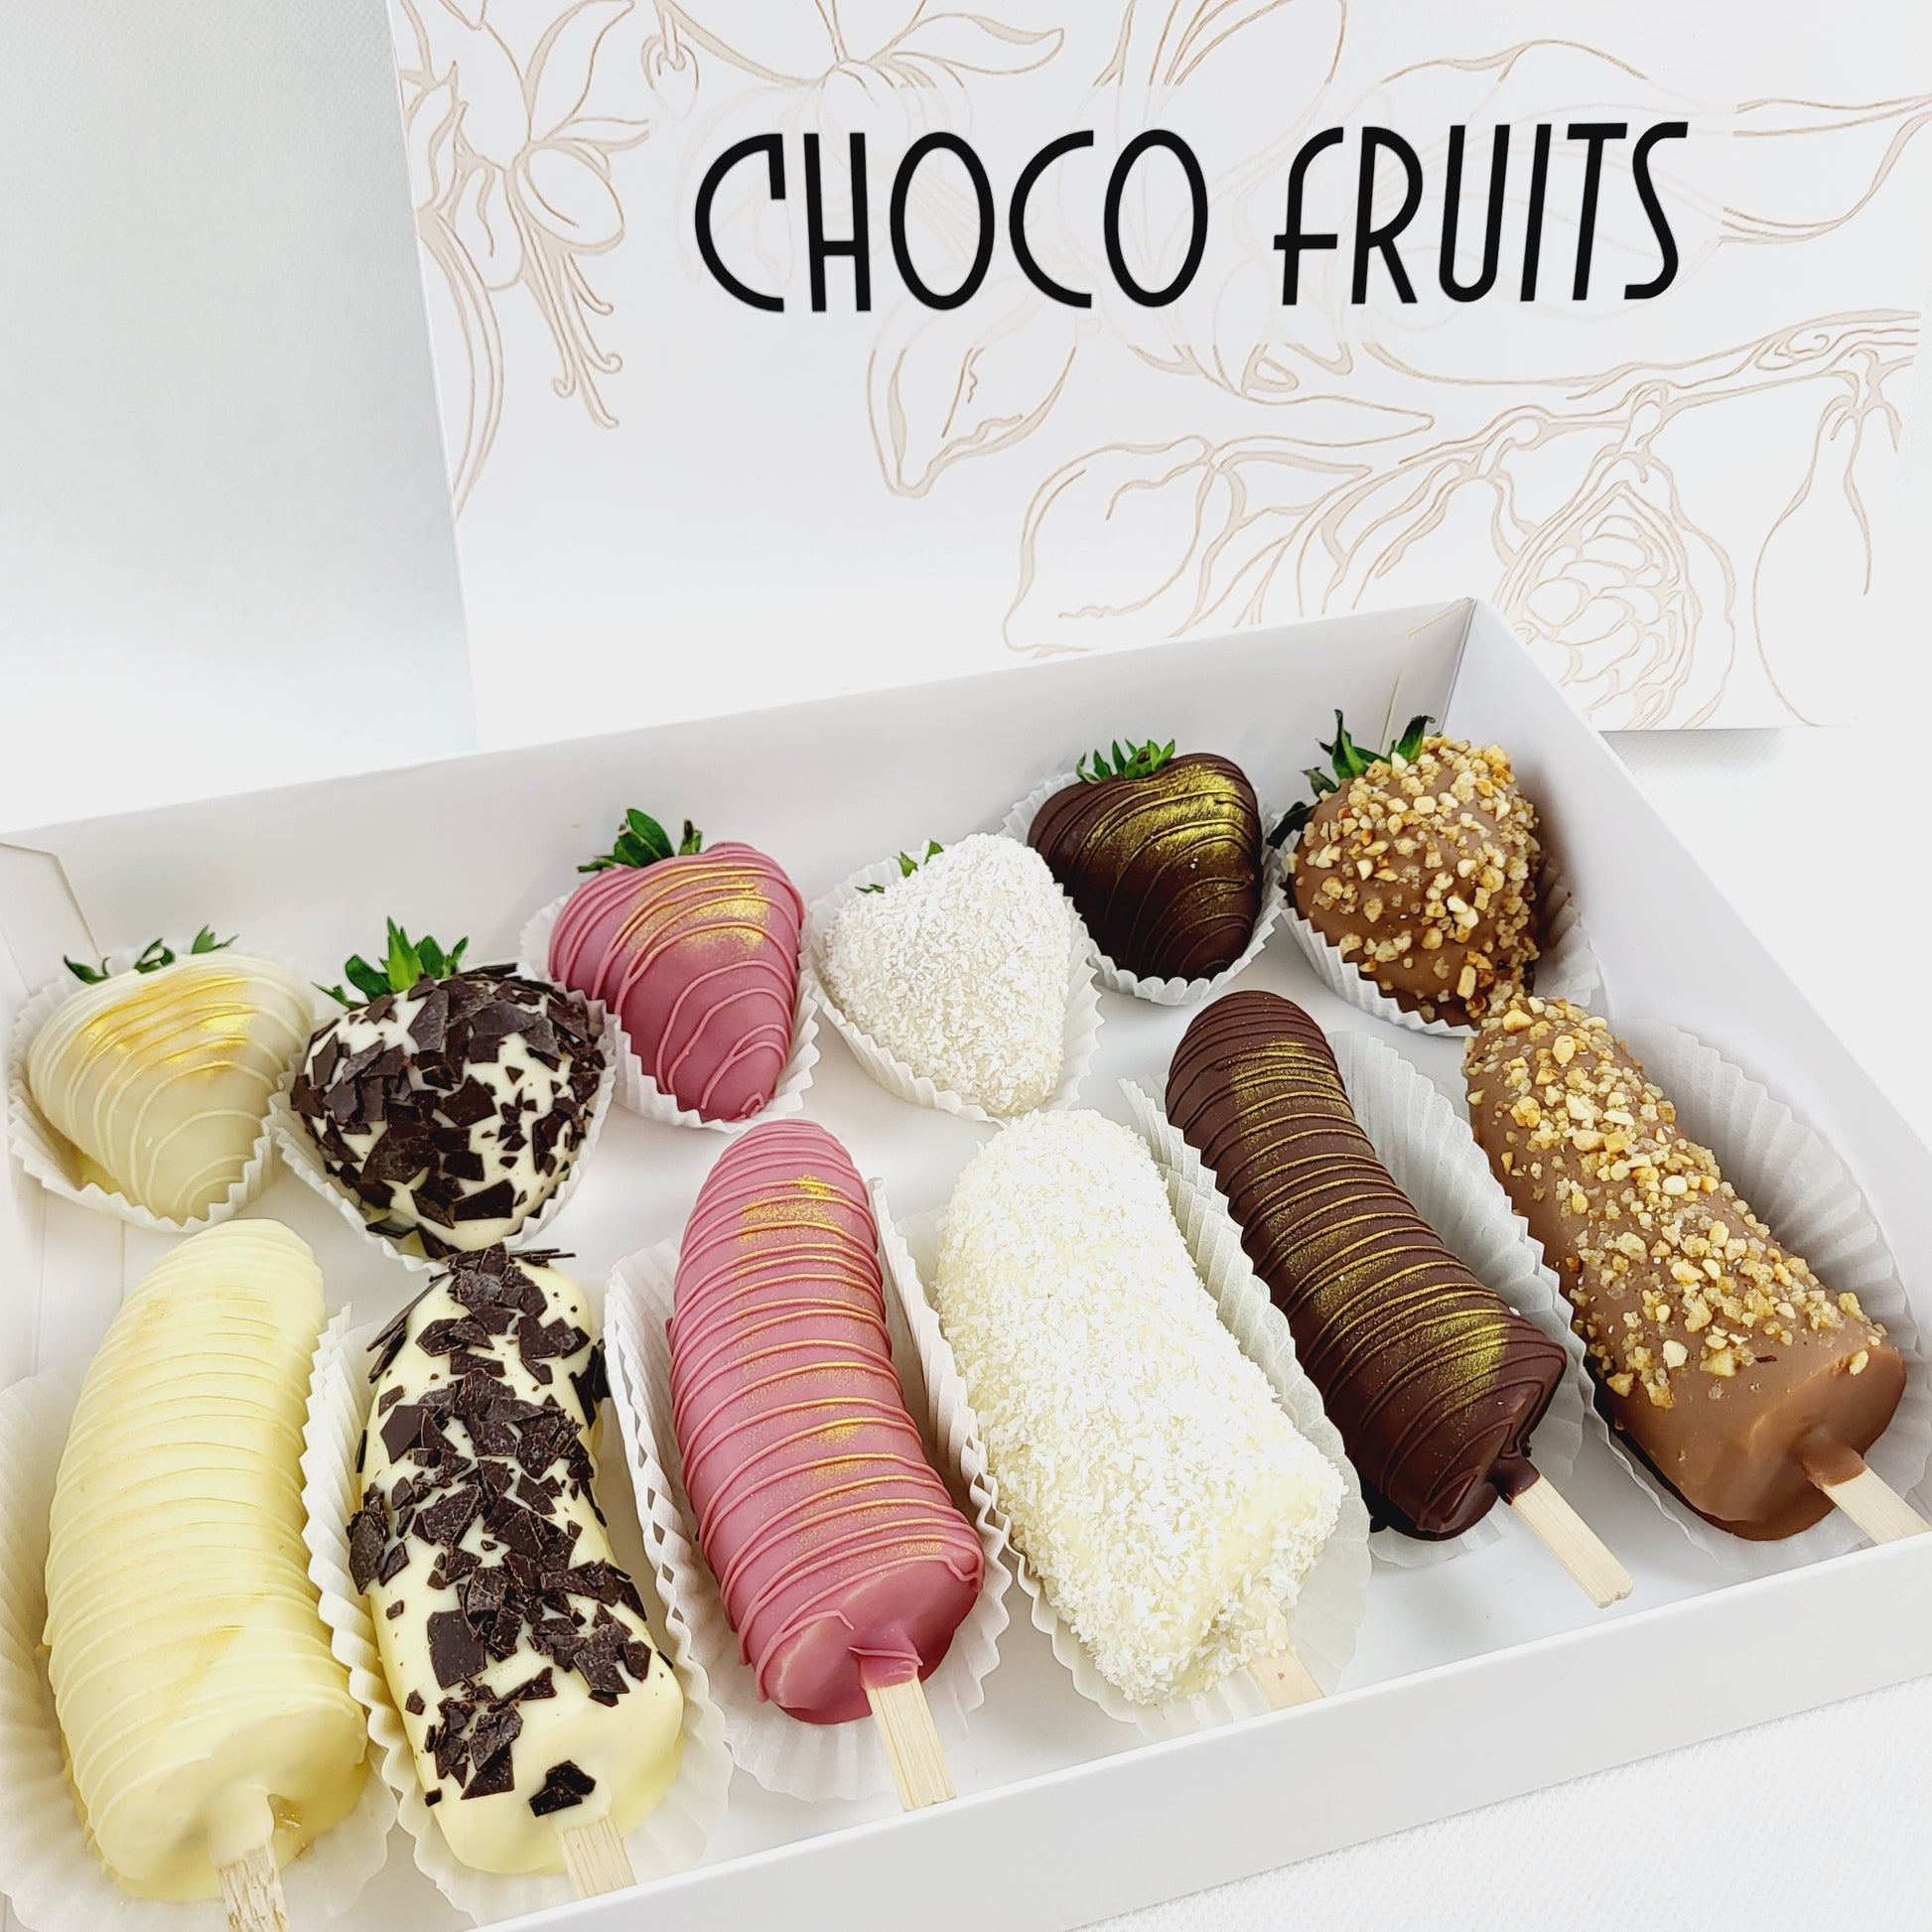 Choco Fruits Schokoerdbeeren und Schokofrüchte Lieferung 